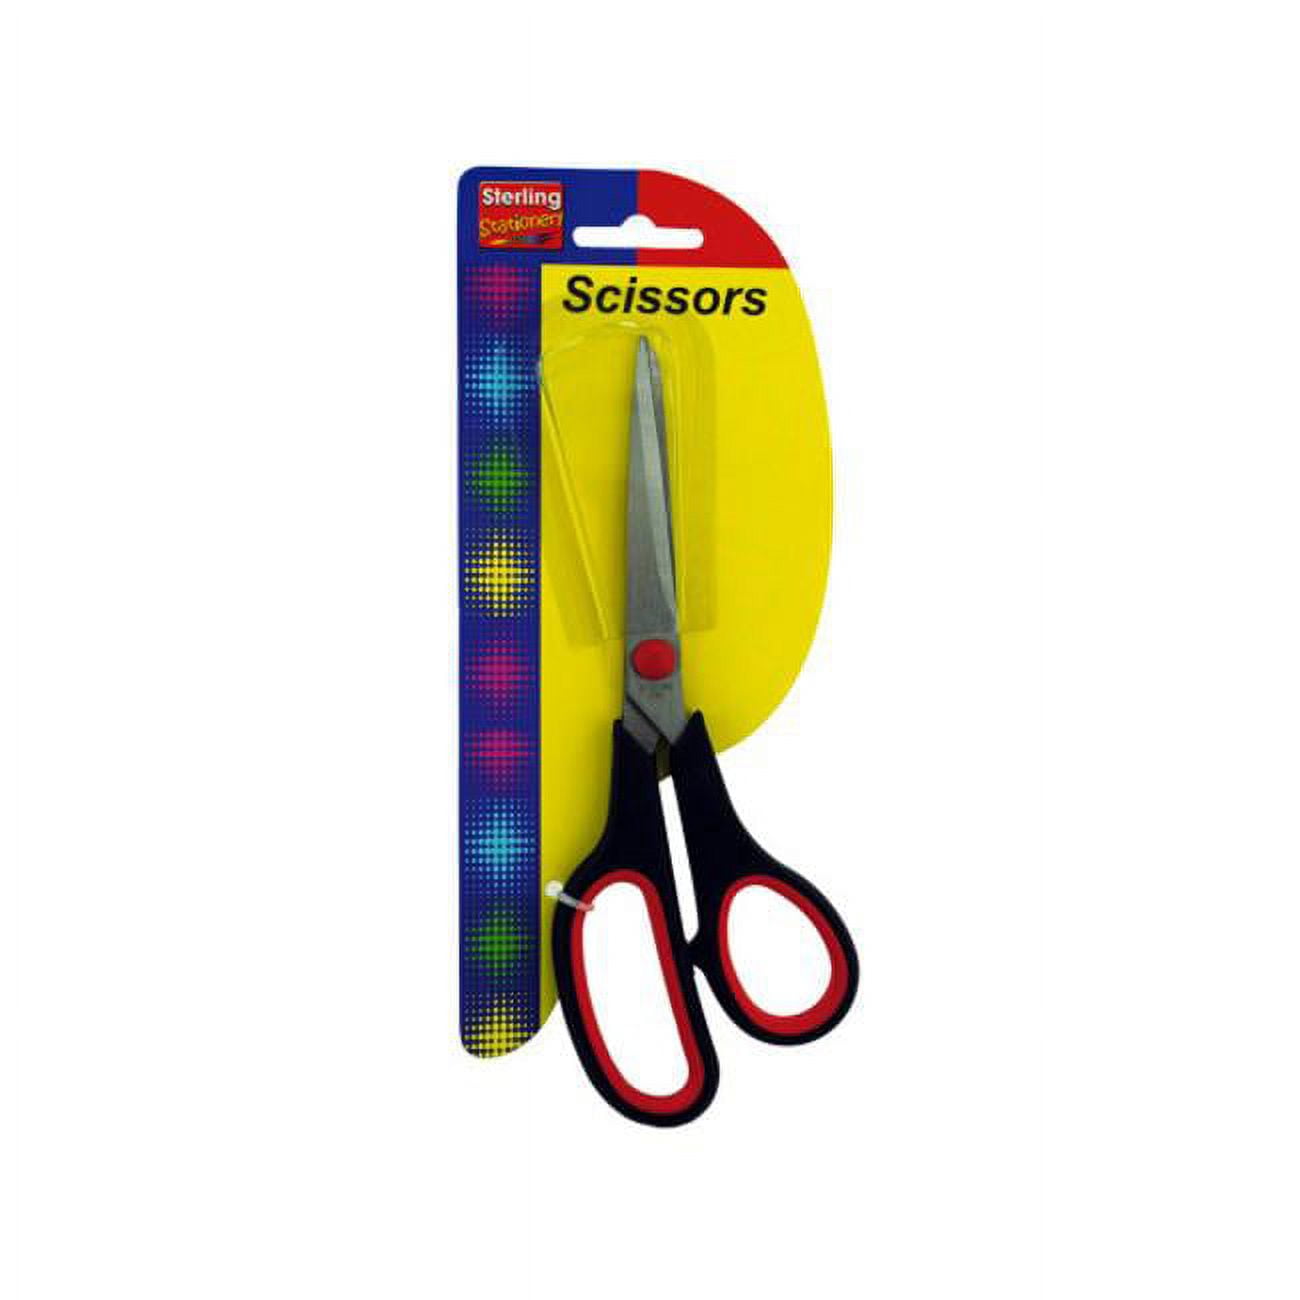 Scissors 8 Multipurpose Scissors Titanium Coated Sturdy Sharp